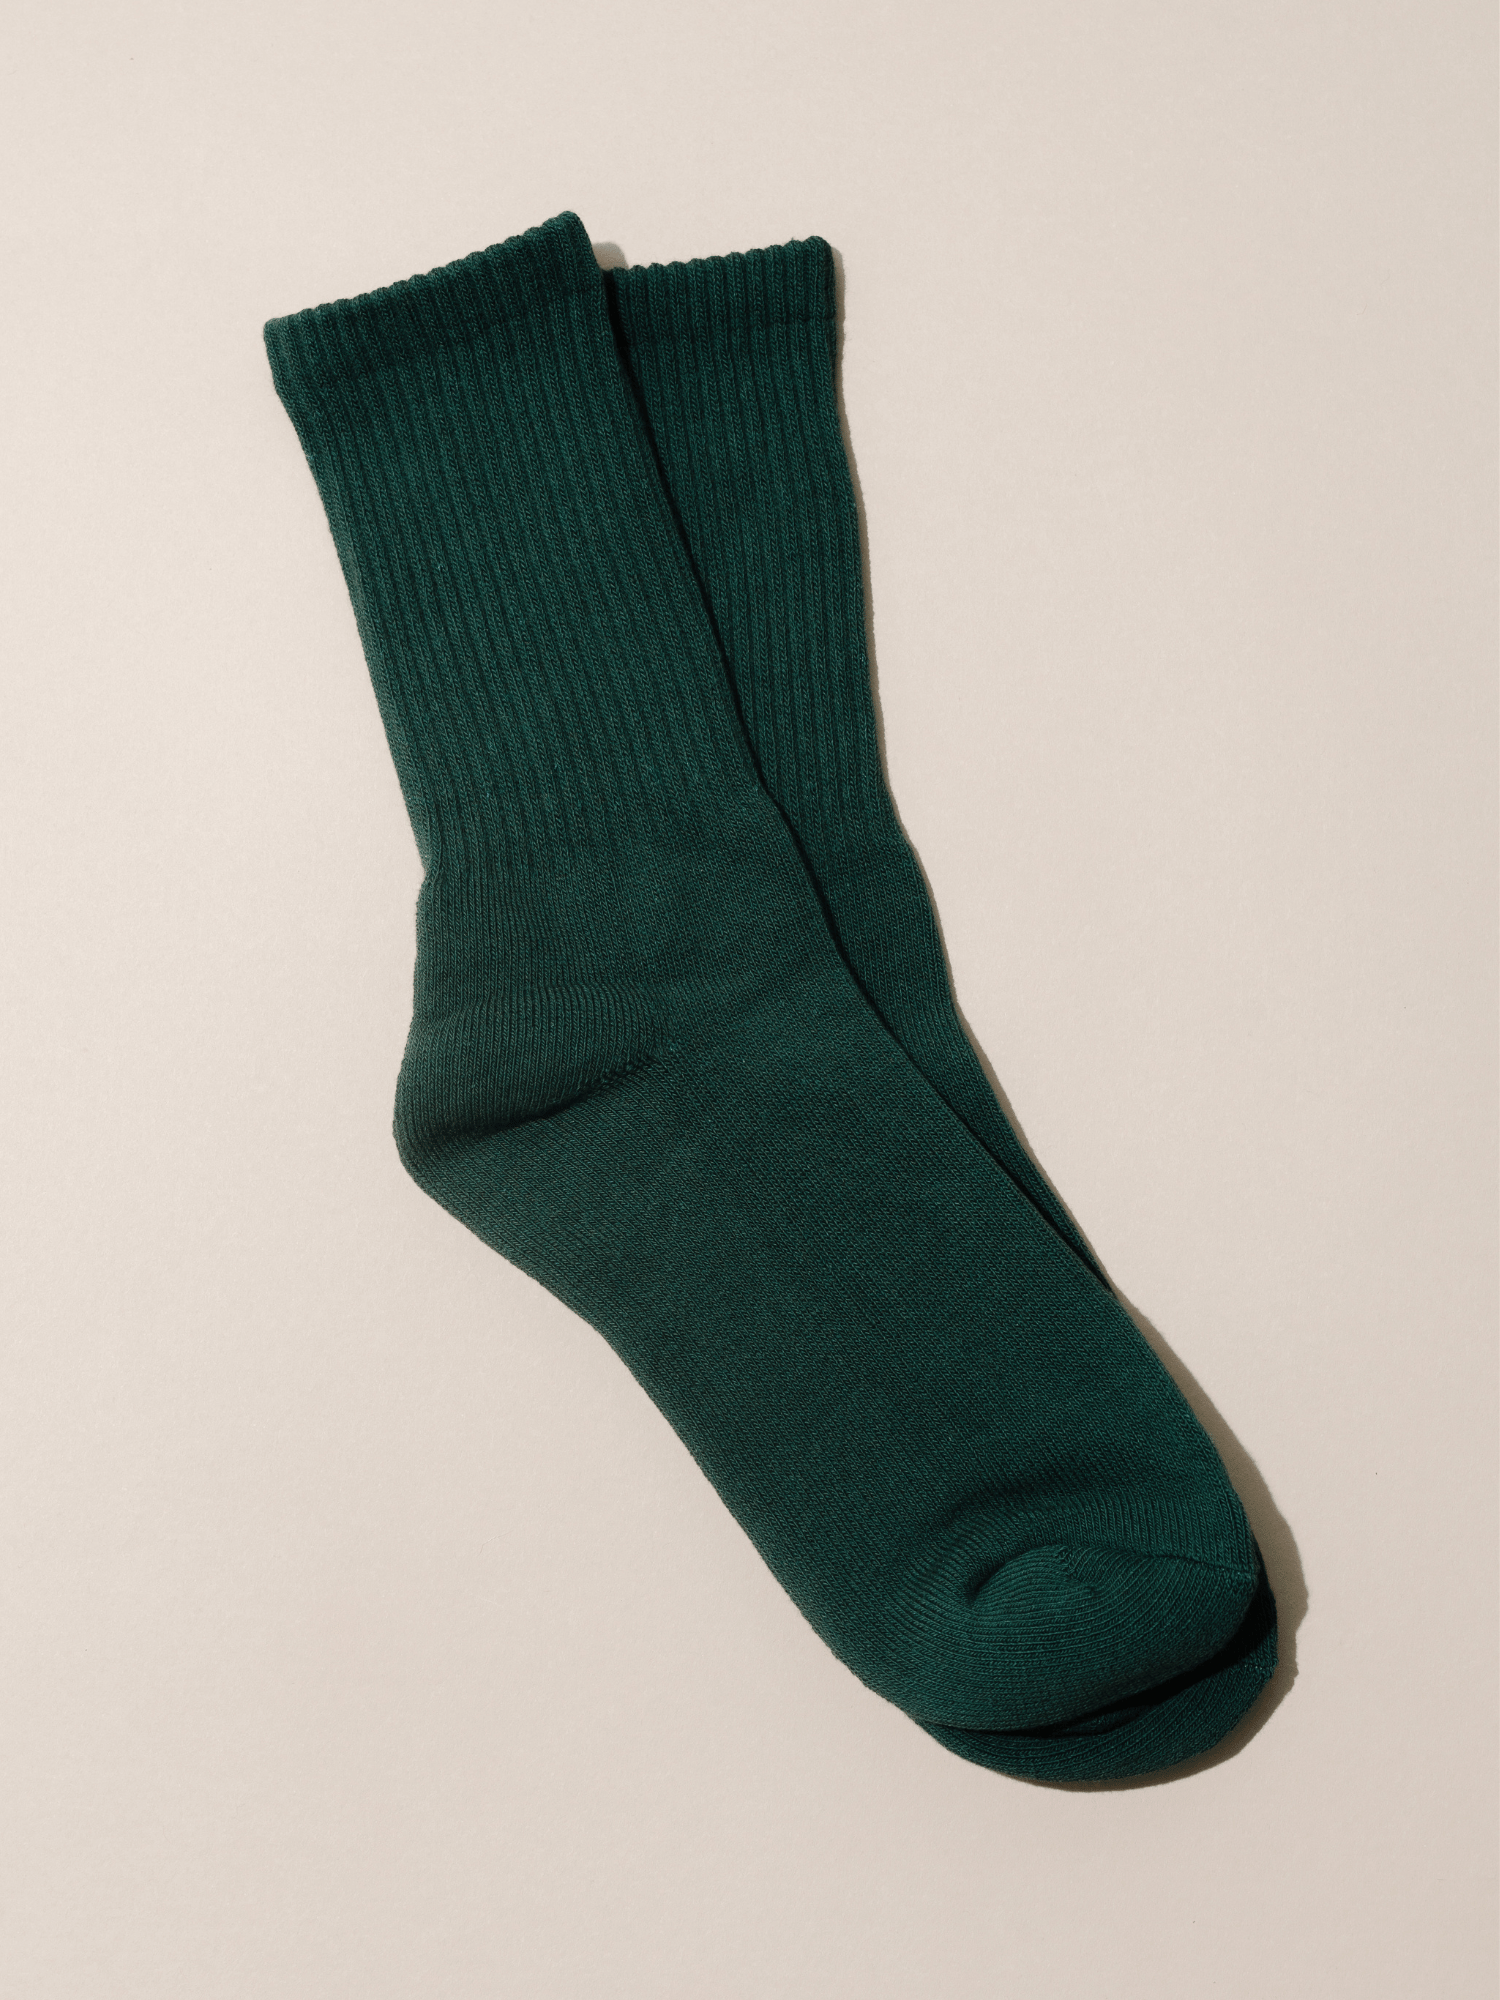 Nat + Noor Cotton Blend Crew Socks